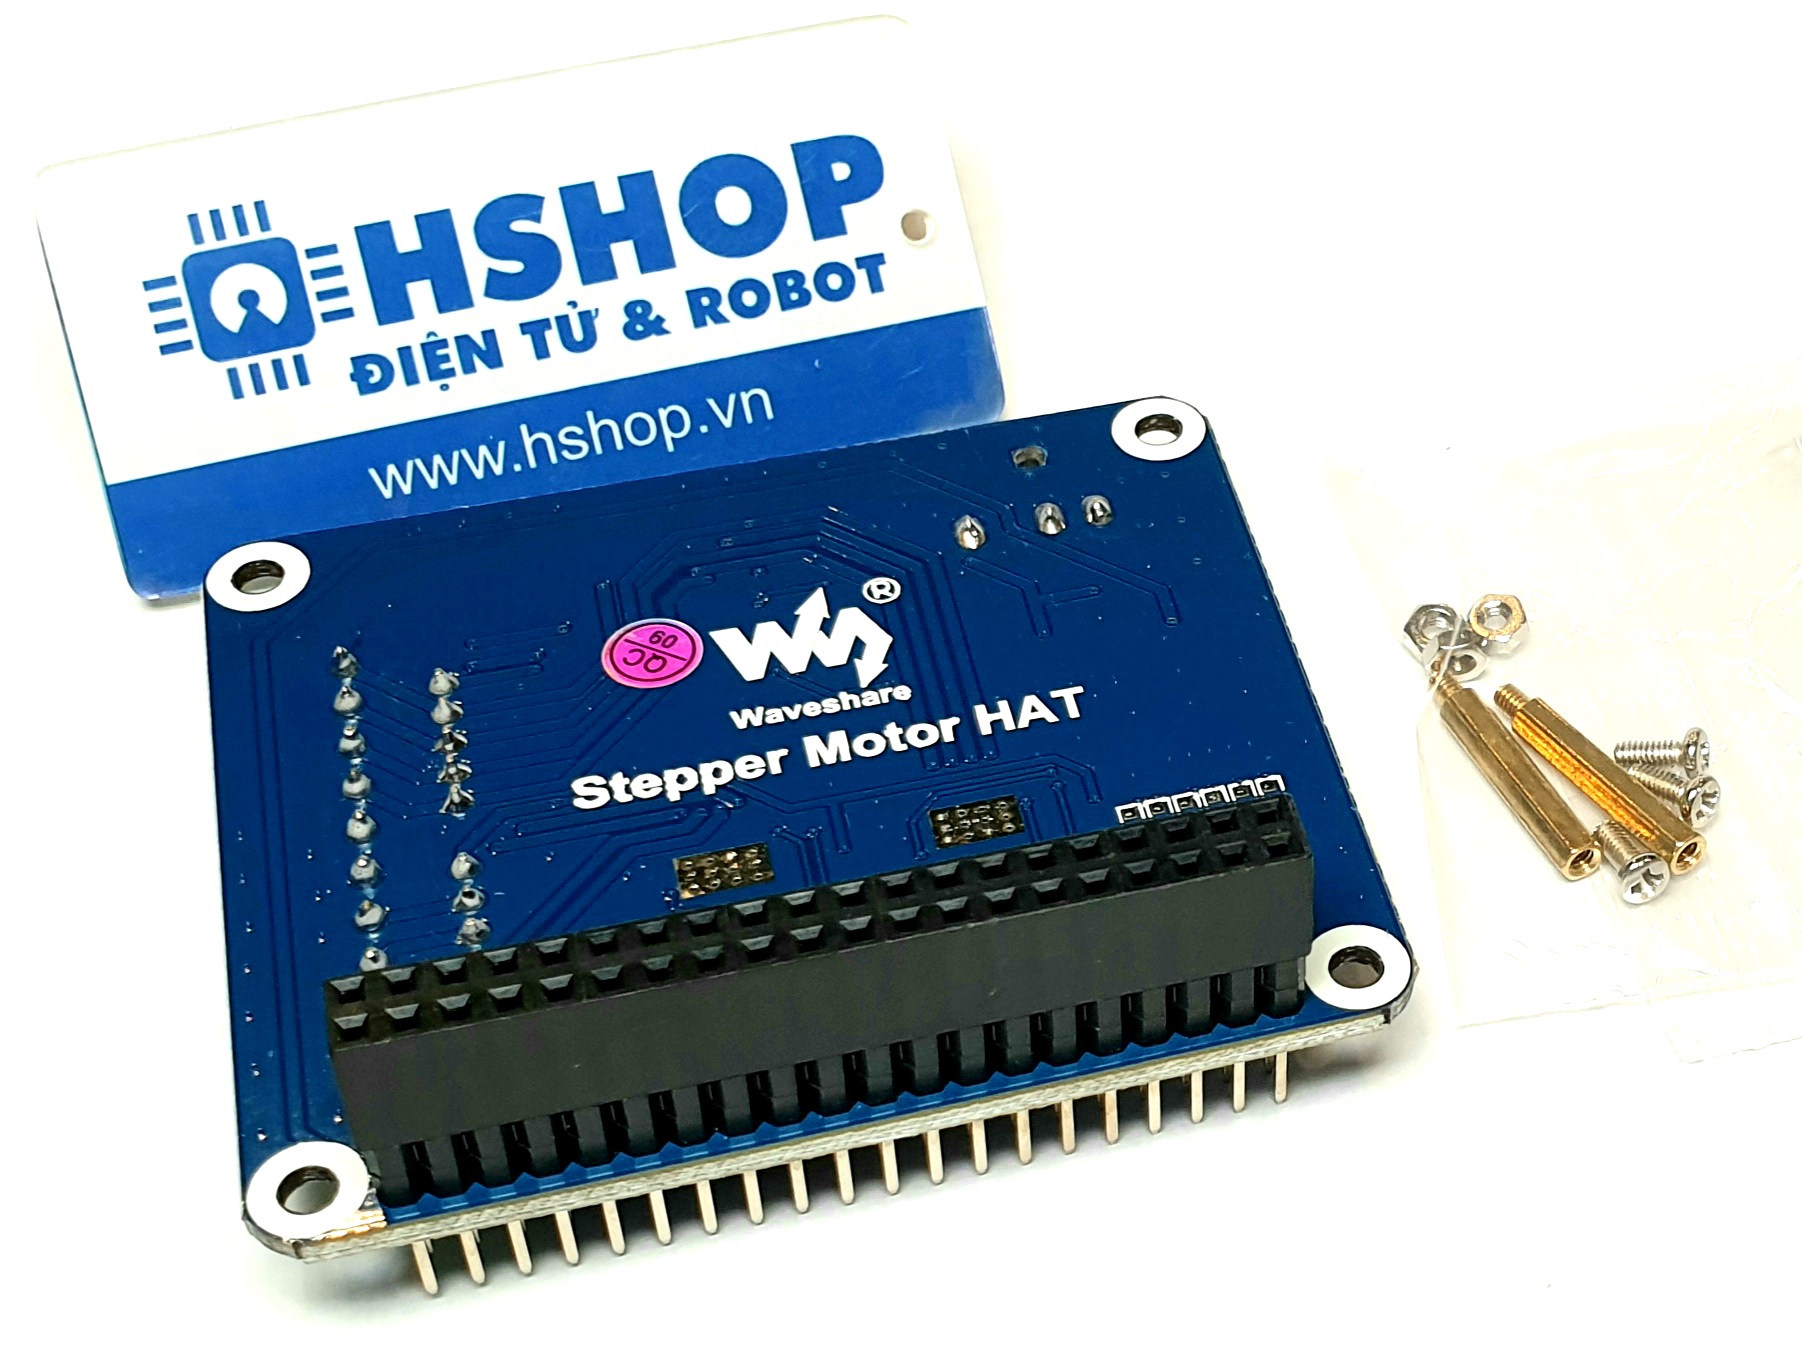 Mạch Waveshare Stepper Motor HAT for Raspberry Pi